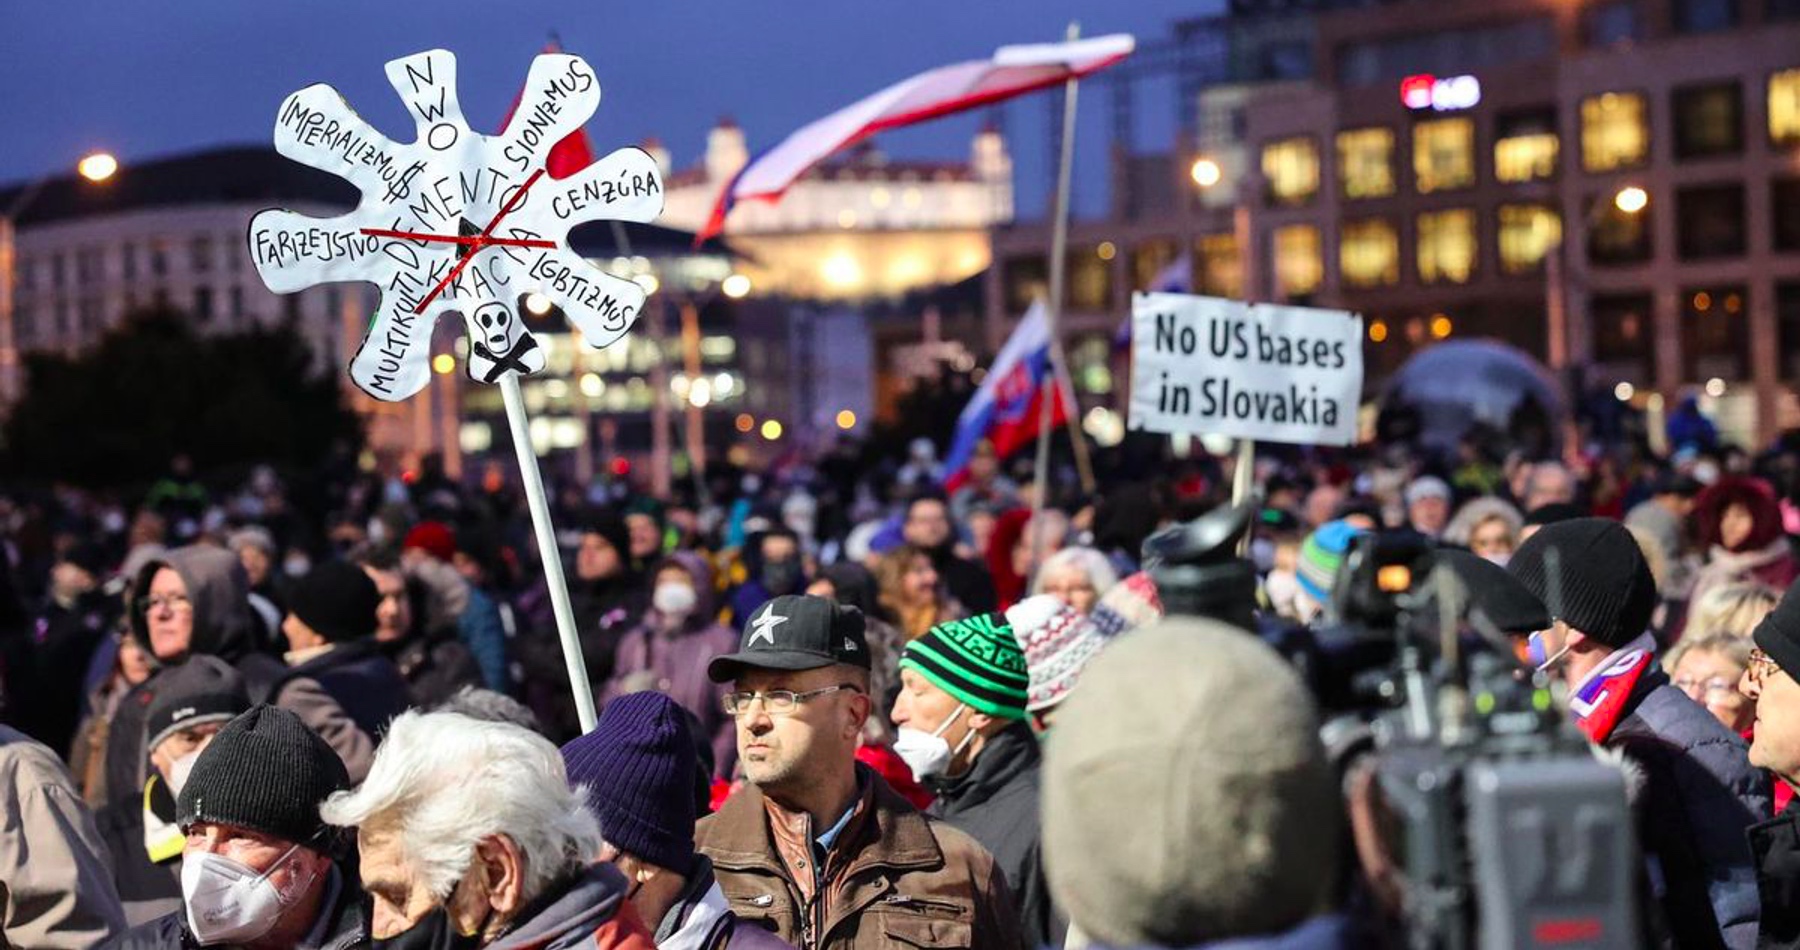 VIDEO: Pred Prezidentským palácom sa konal veľký protivládny protest. Fico vyzval občanov povstať proti Hegero-Matovičovej garnitúre. Slováci vyjadrovali odpor proti očkovaniu, zvyšovaniu cien, okupačnej dohode s USA a vyvolávaniu konfliktu s Ruskom